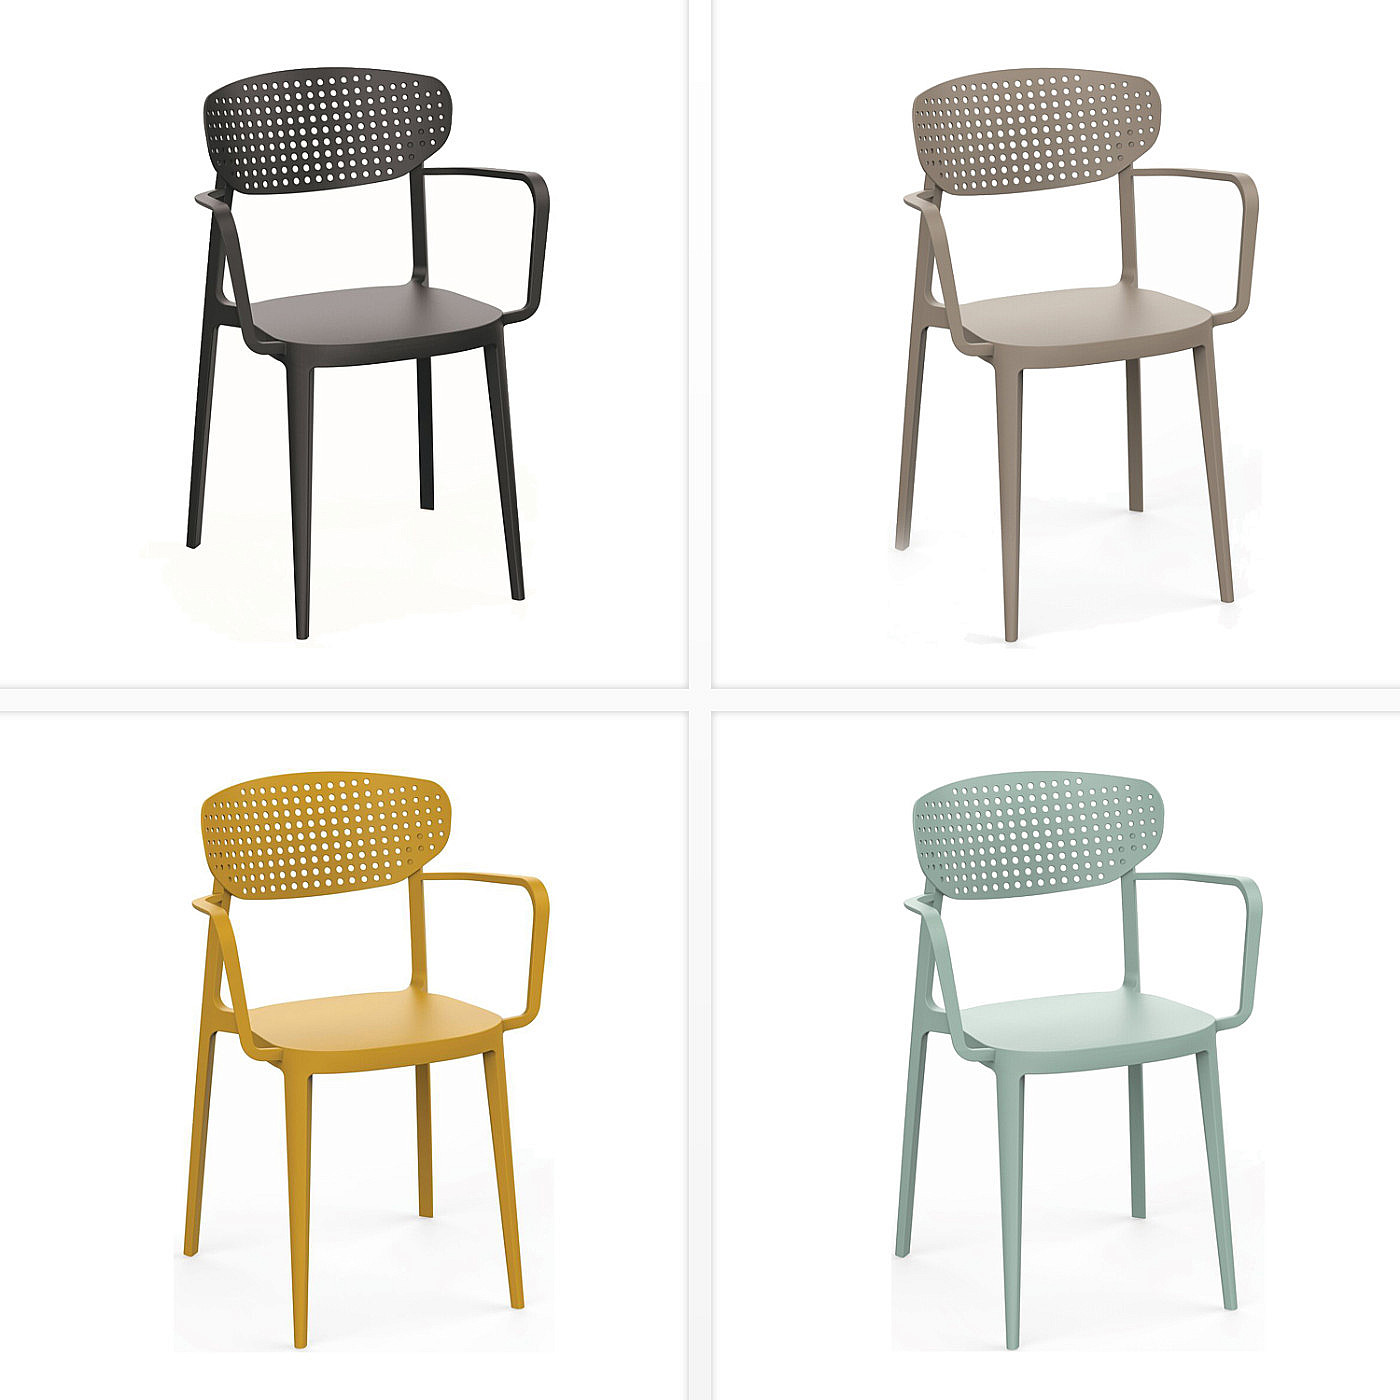 Plastová židle s područkami OSLO (různé barvy) žlutá